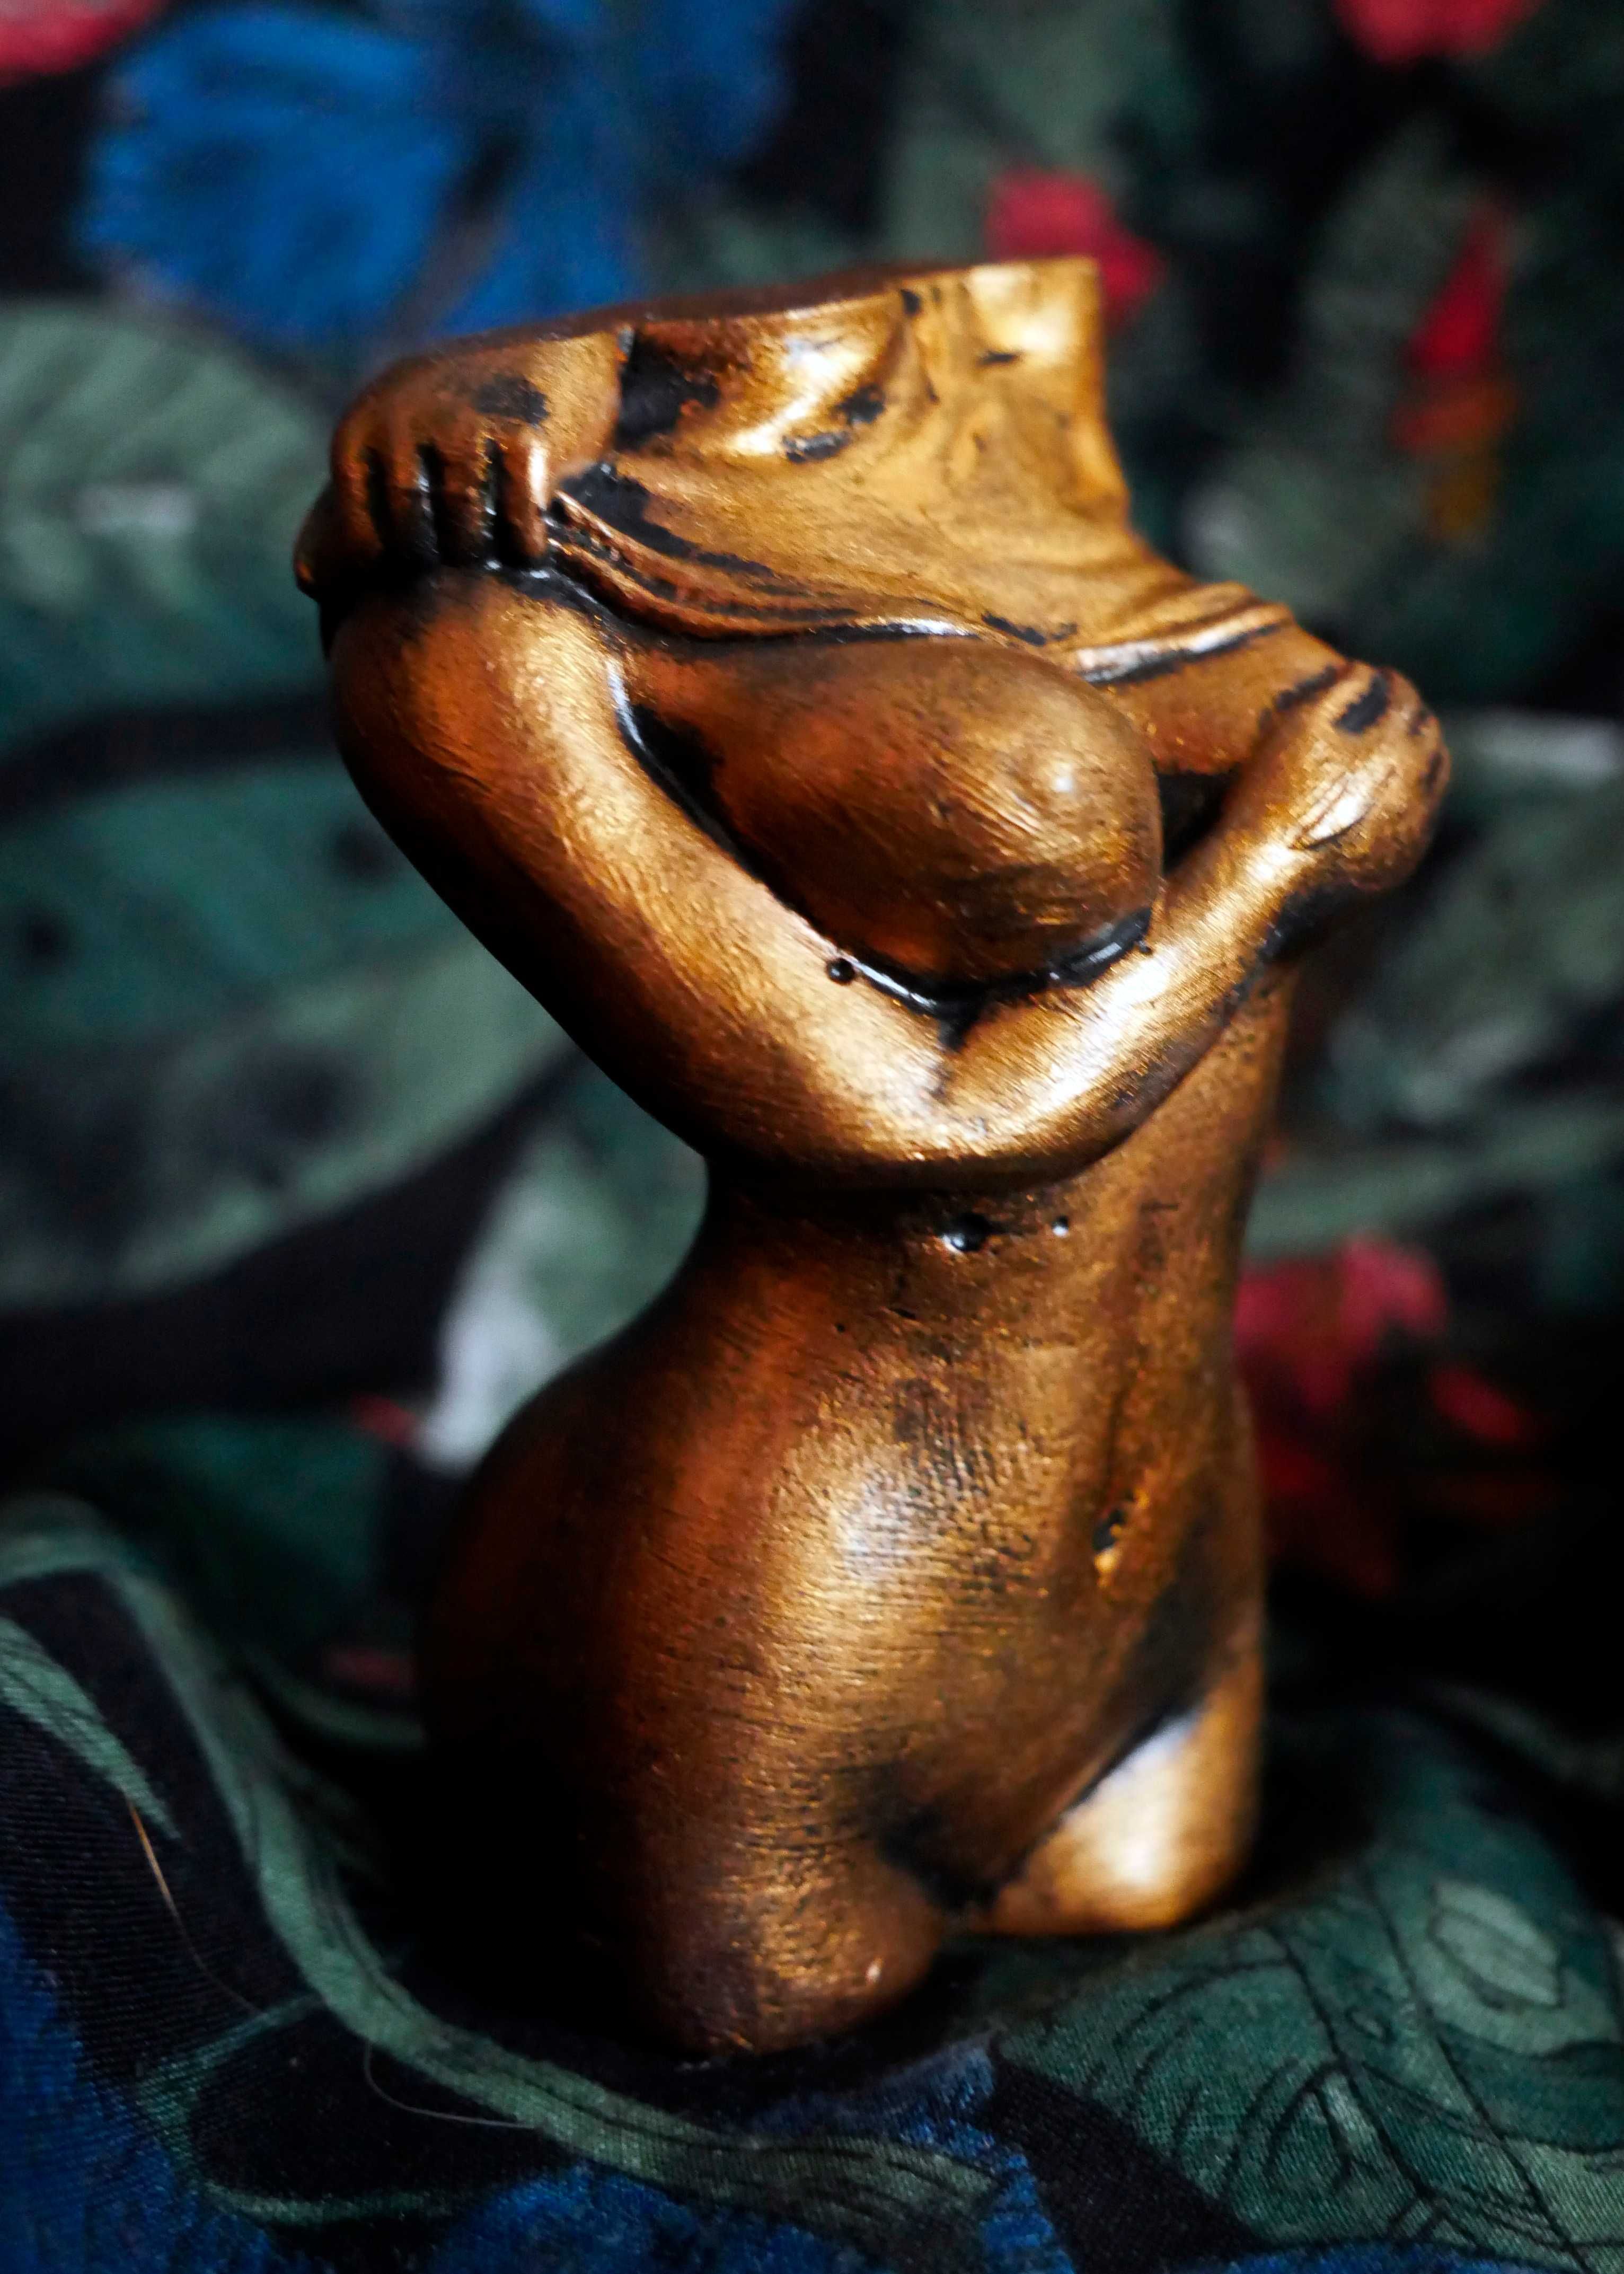 Rzeźba z gipsu, złota kobieta wys. 9 cm